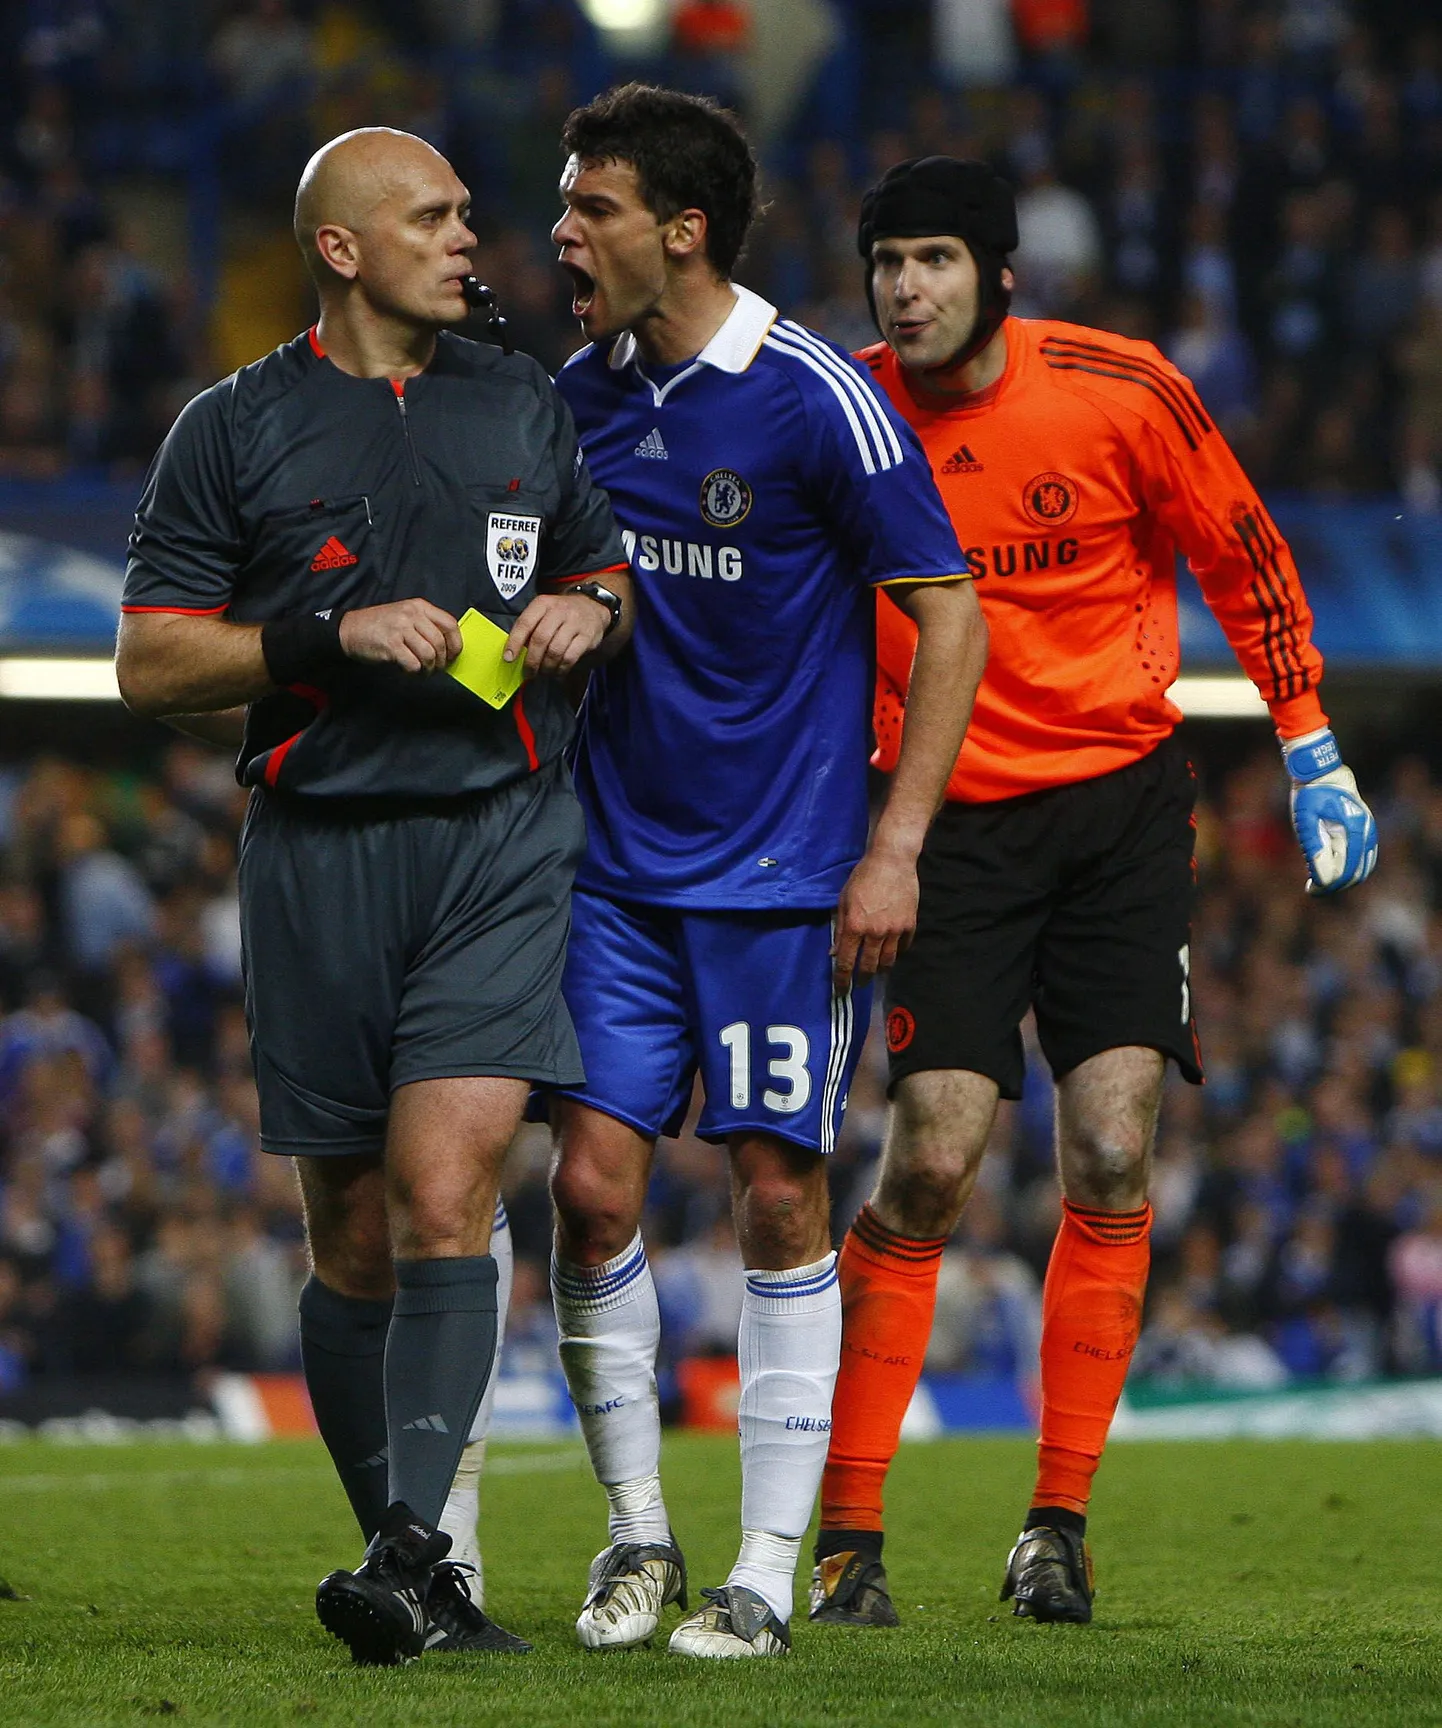 Chelsea mängija Michael Ballack (keskel)kohtunik Tom Henning Övrebö peale karjumas.